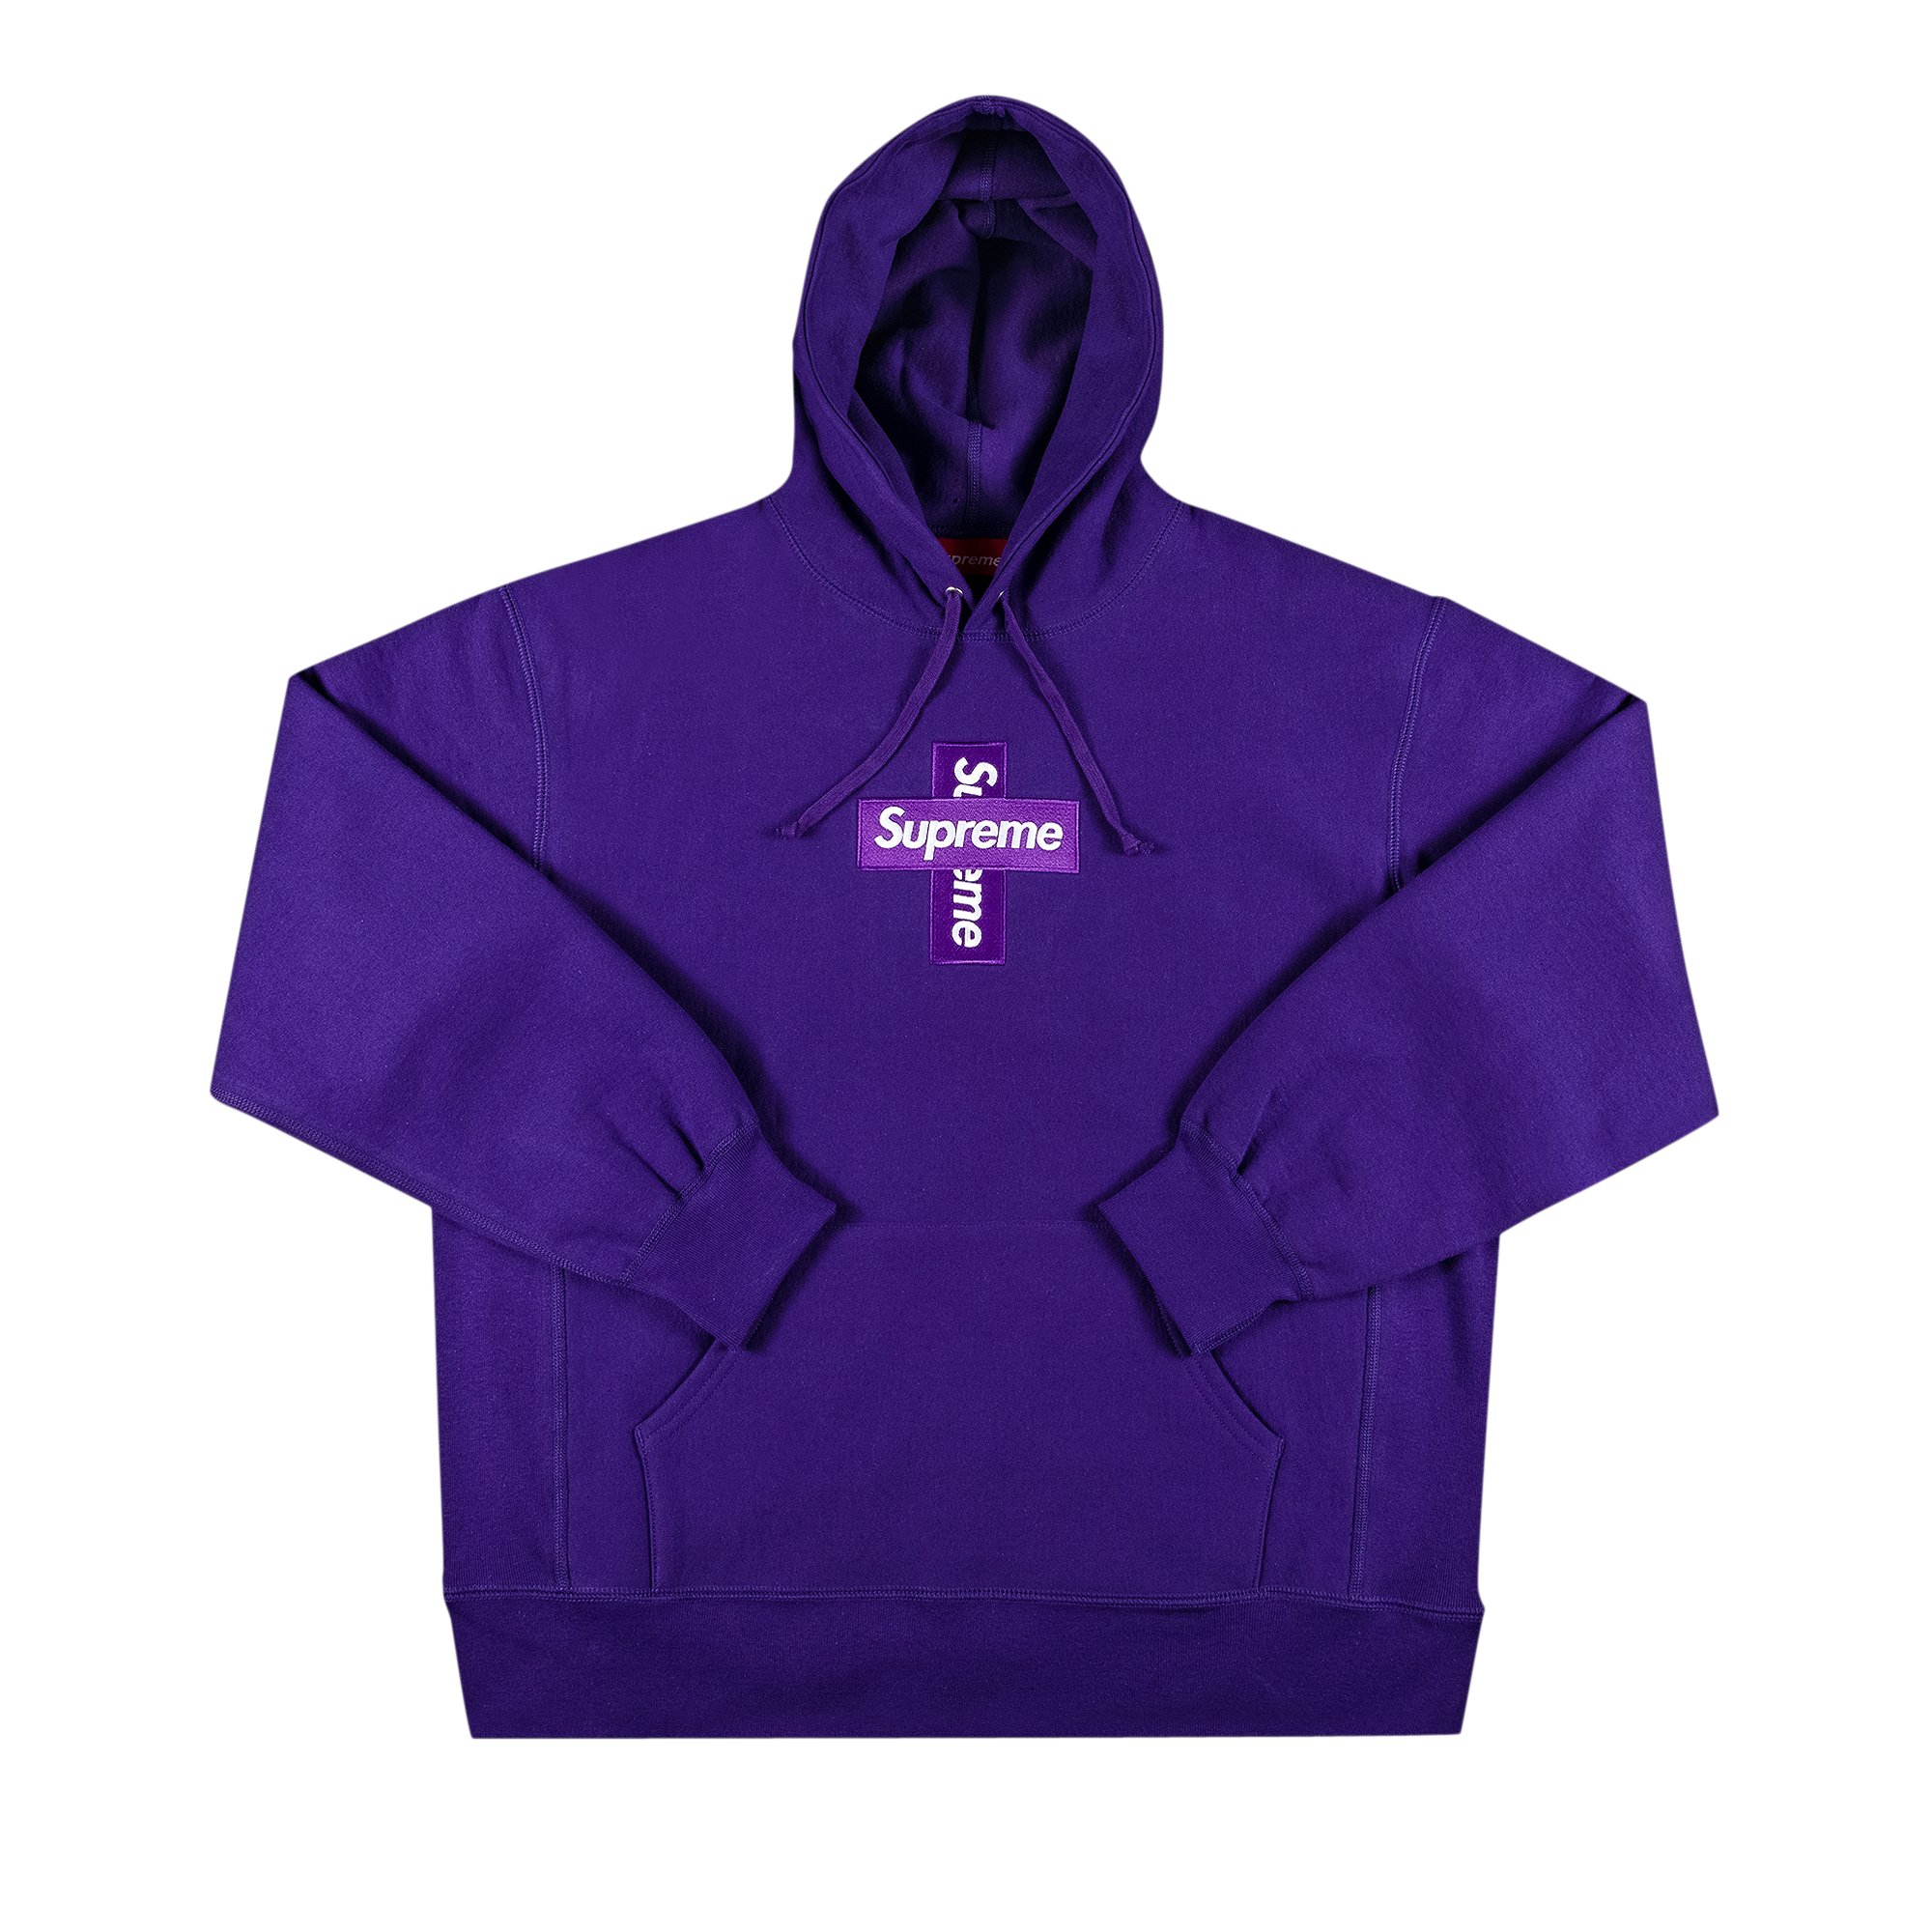 Supreme $ Hooded Sweatshirt Light Purple